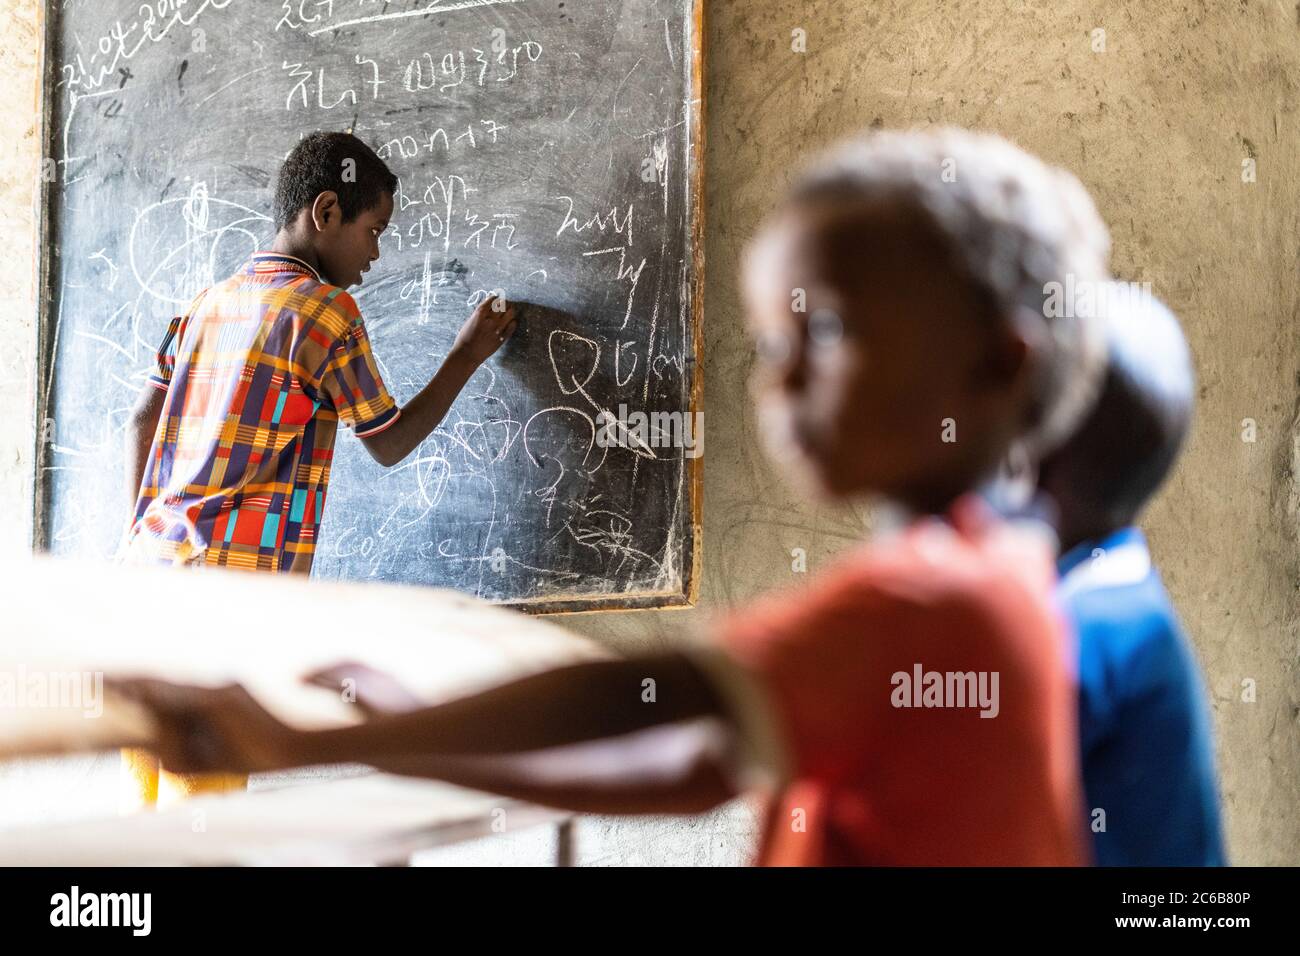 Young boy writing on blackboard at school, Melabday, Asso Bhole, Danakil Depression, Afar Region, Ethiopia, Africa Stock Photo